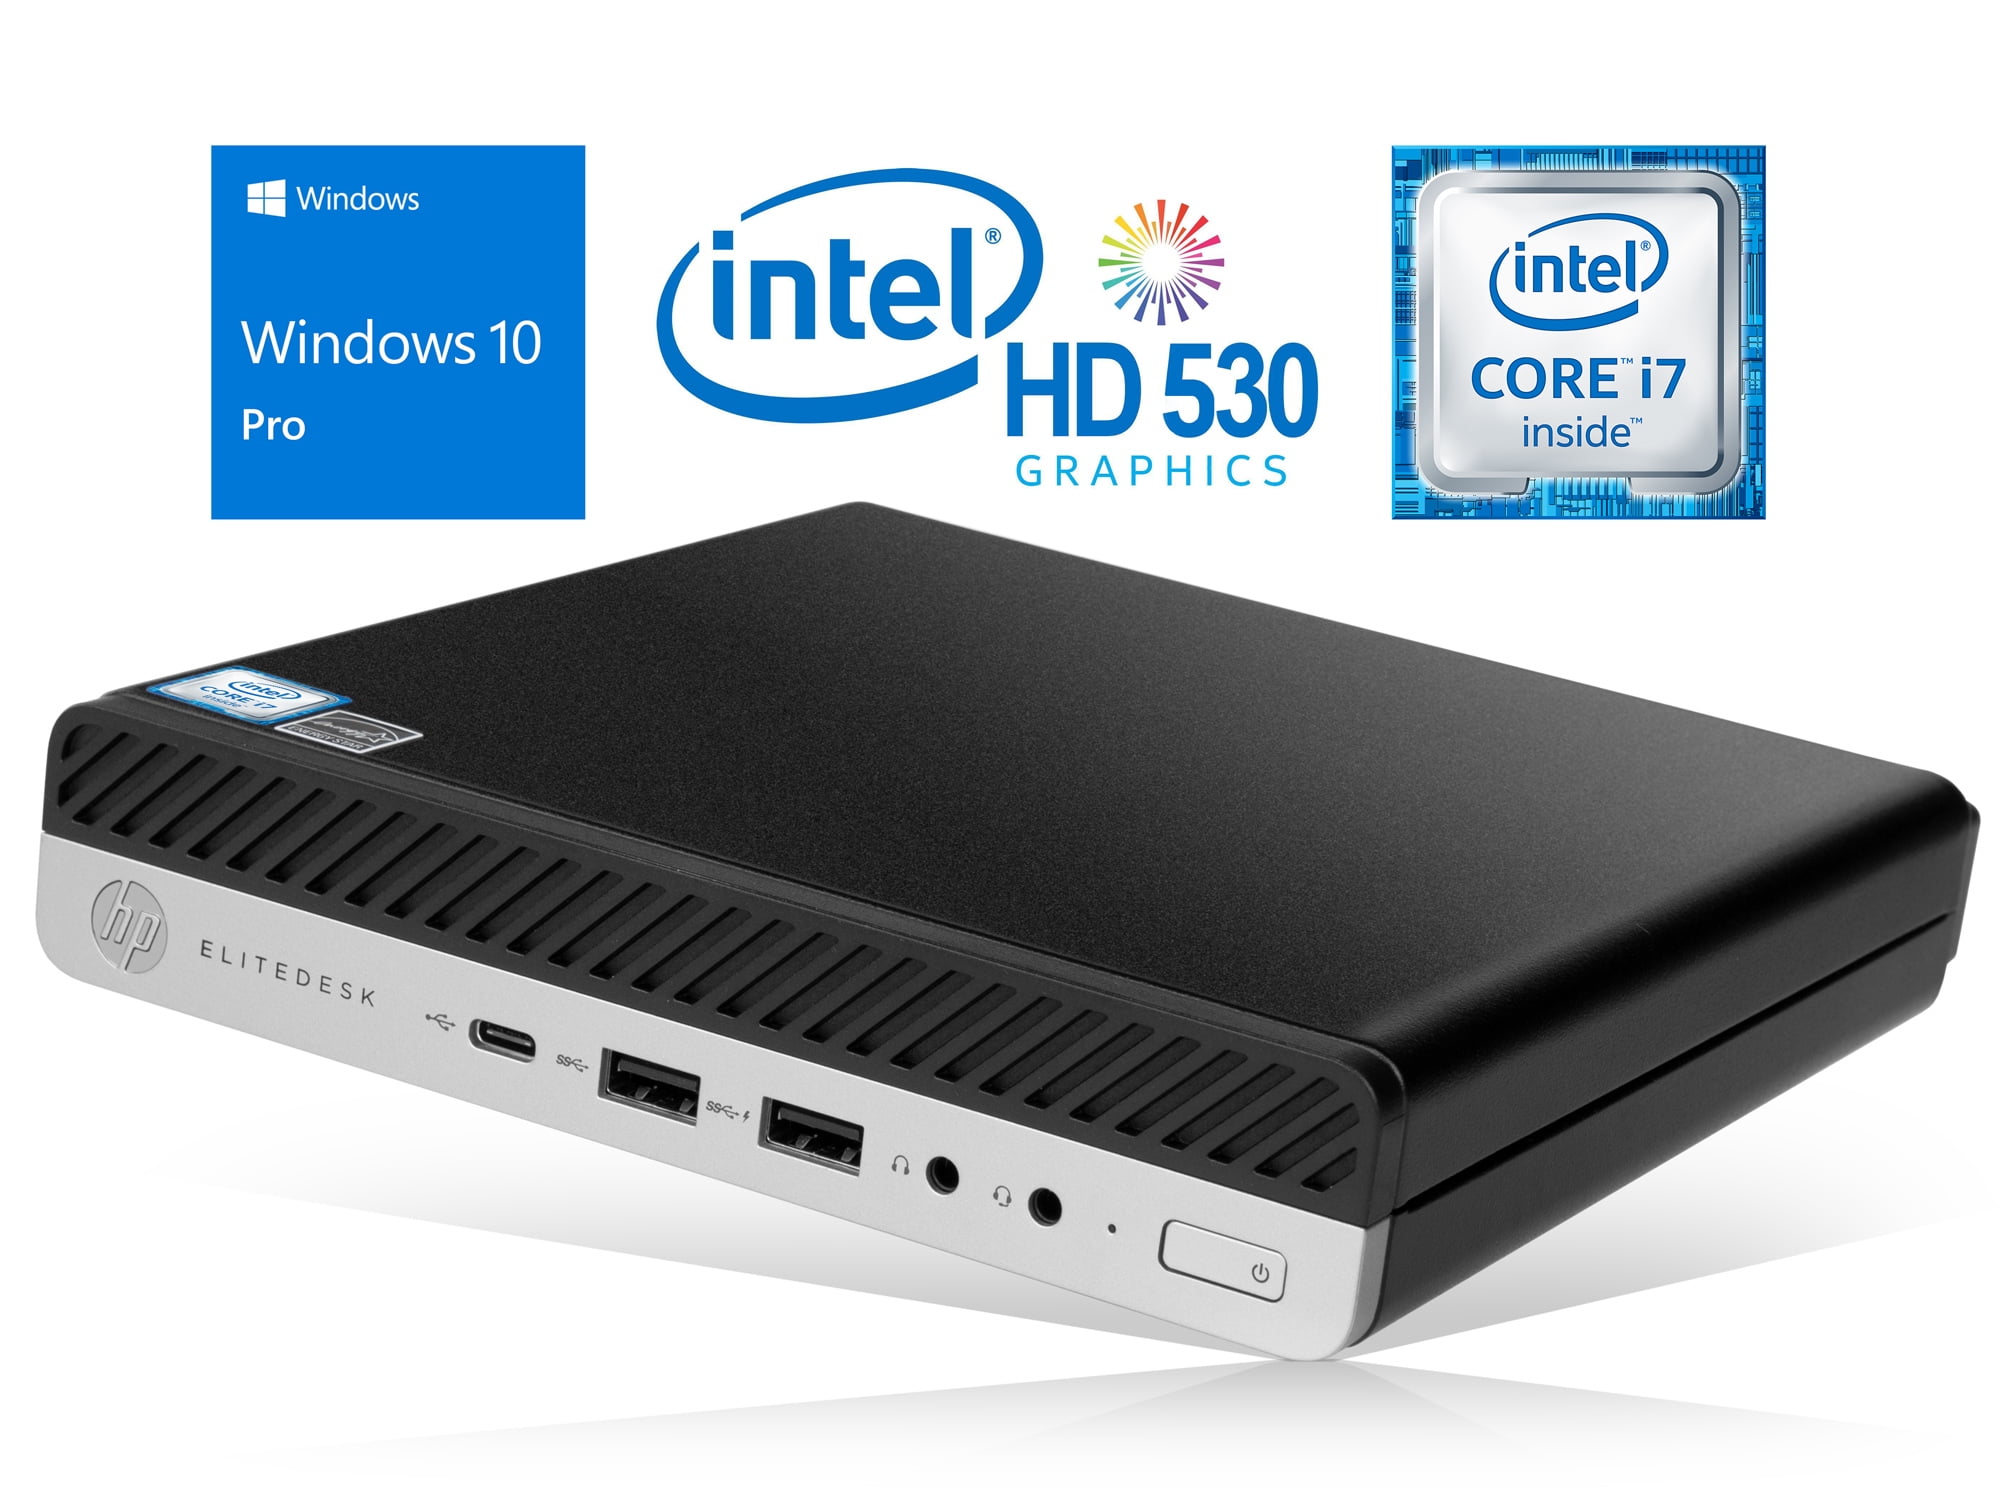 HP EliteDesk 800 G3 Mini PC, Intel Core i7-6700 Upto 4.0GHz, 8GB RAM, 512GB  SSD, DisplayPort, Wi-Fi, Bluetooth, Windows 10 Pro